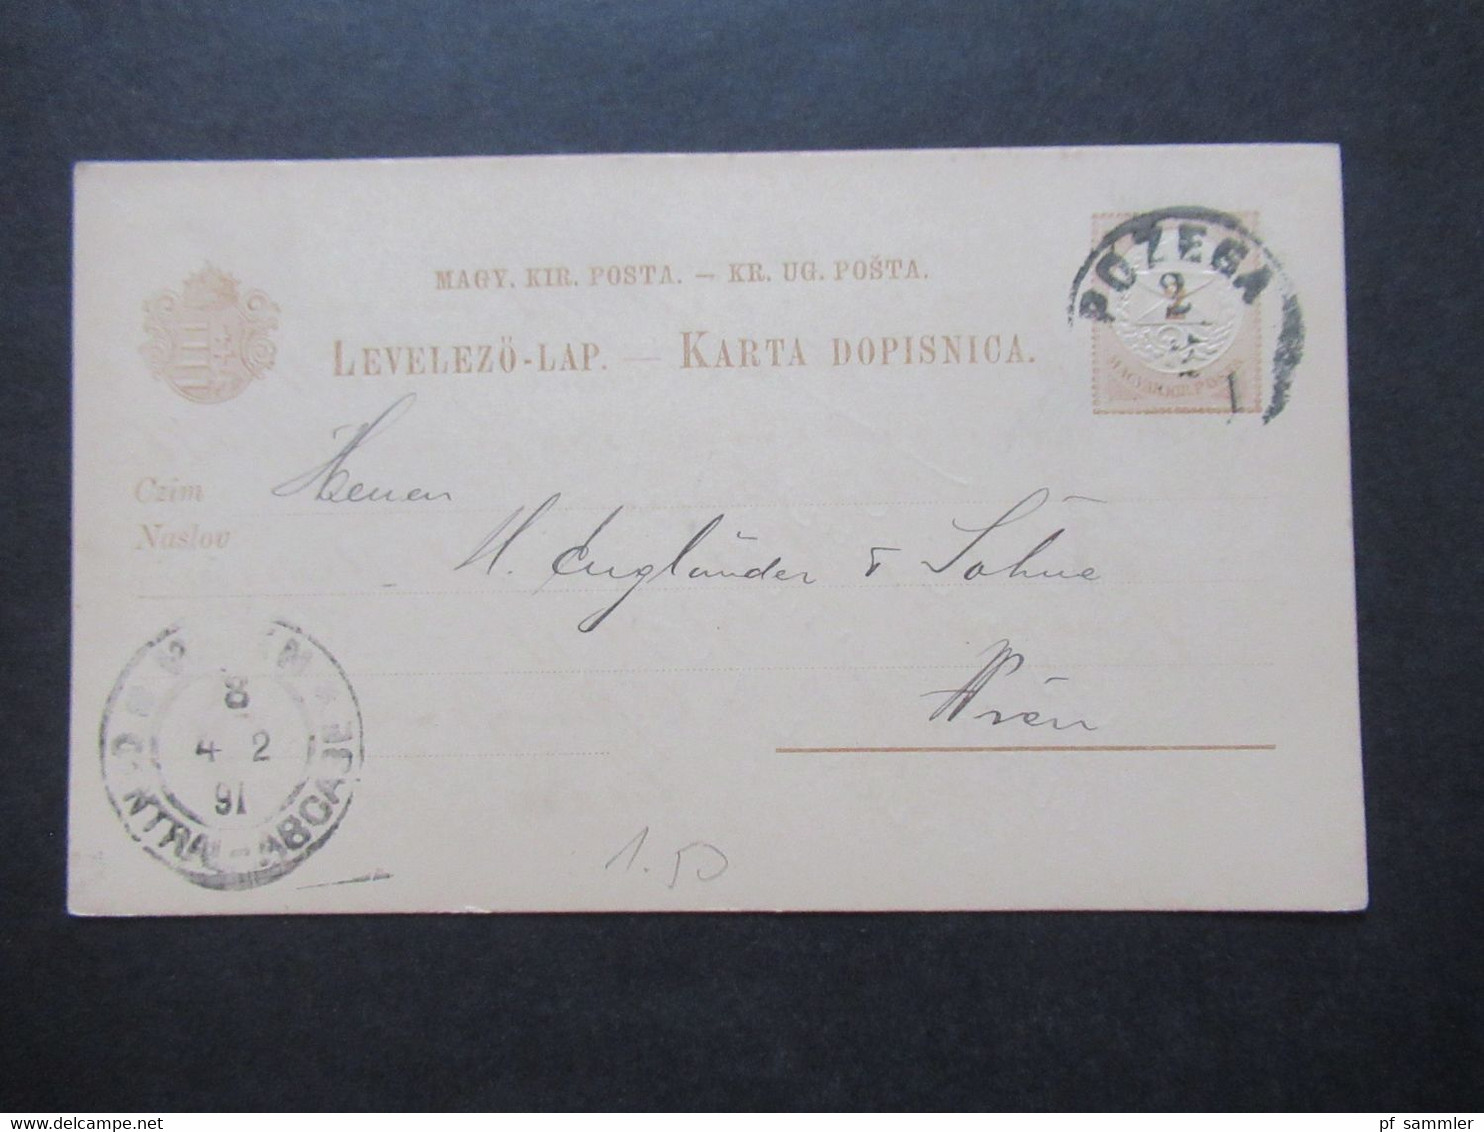 Ungarn ca. 1887 / 1891 Ganzsachen Posten ca.45 Stück alle nach Wien gesendet / interessanter Stöberposten!!